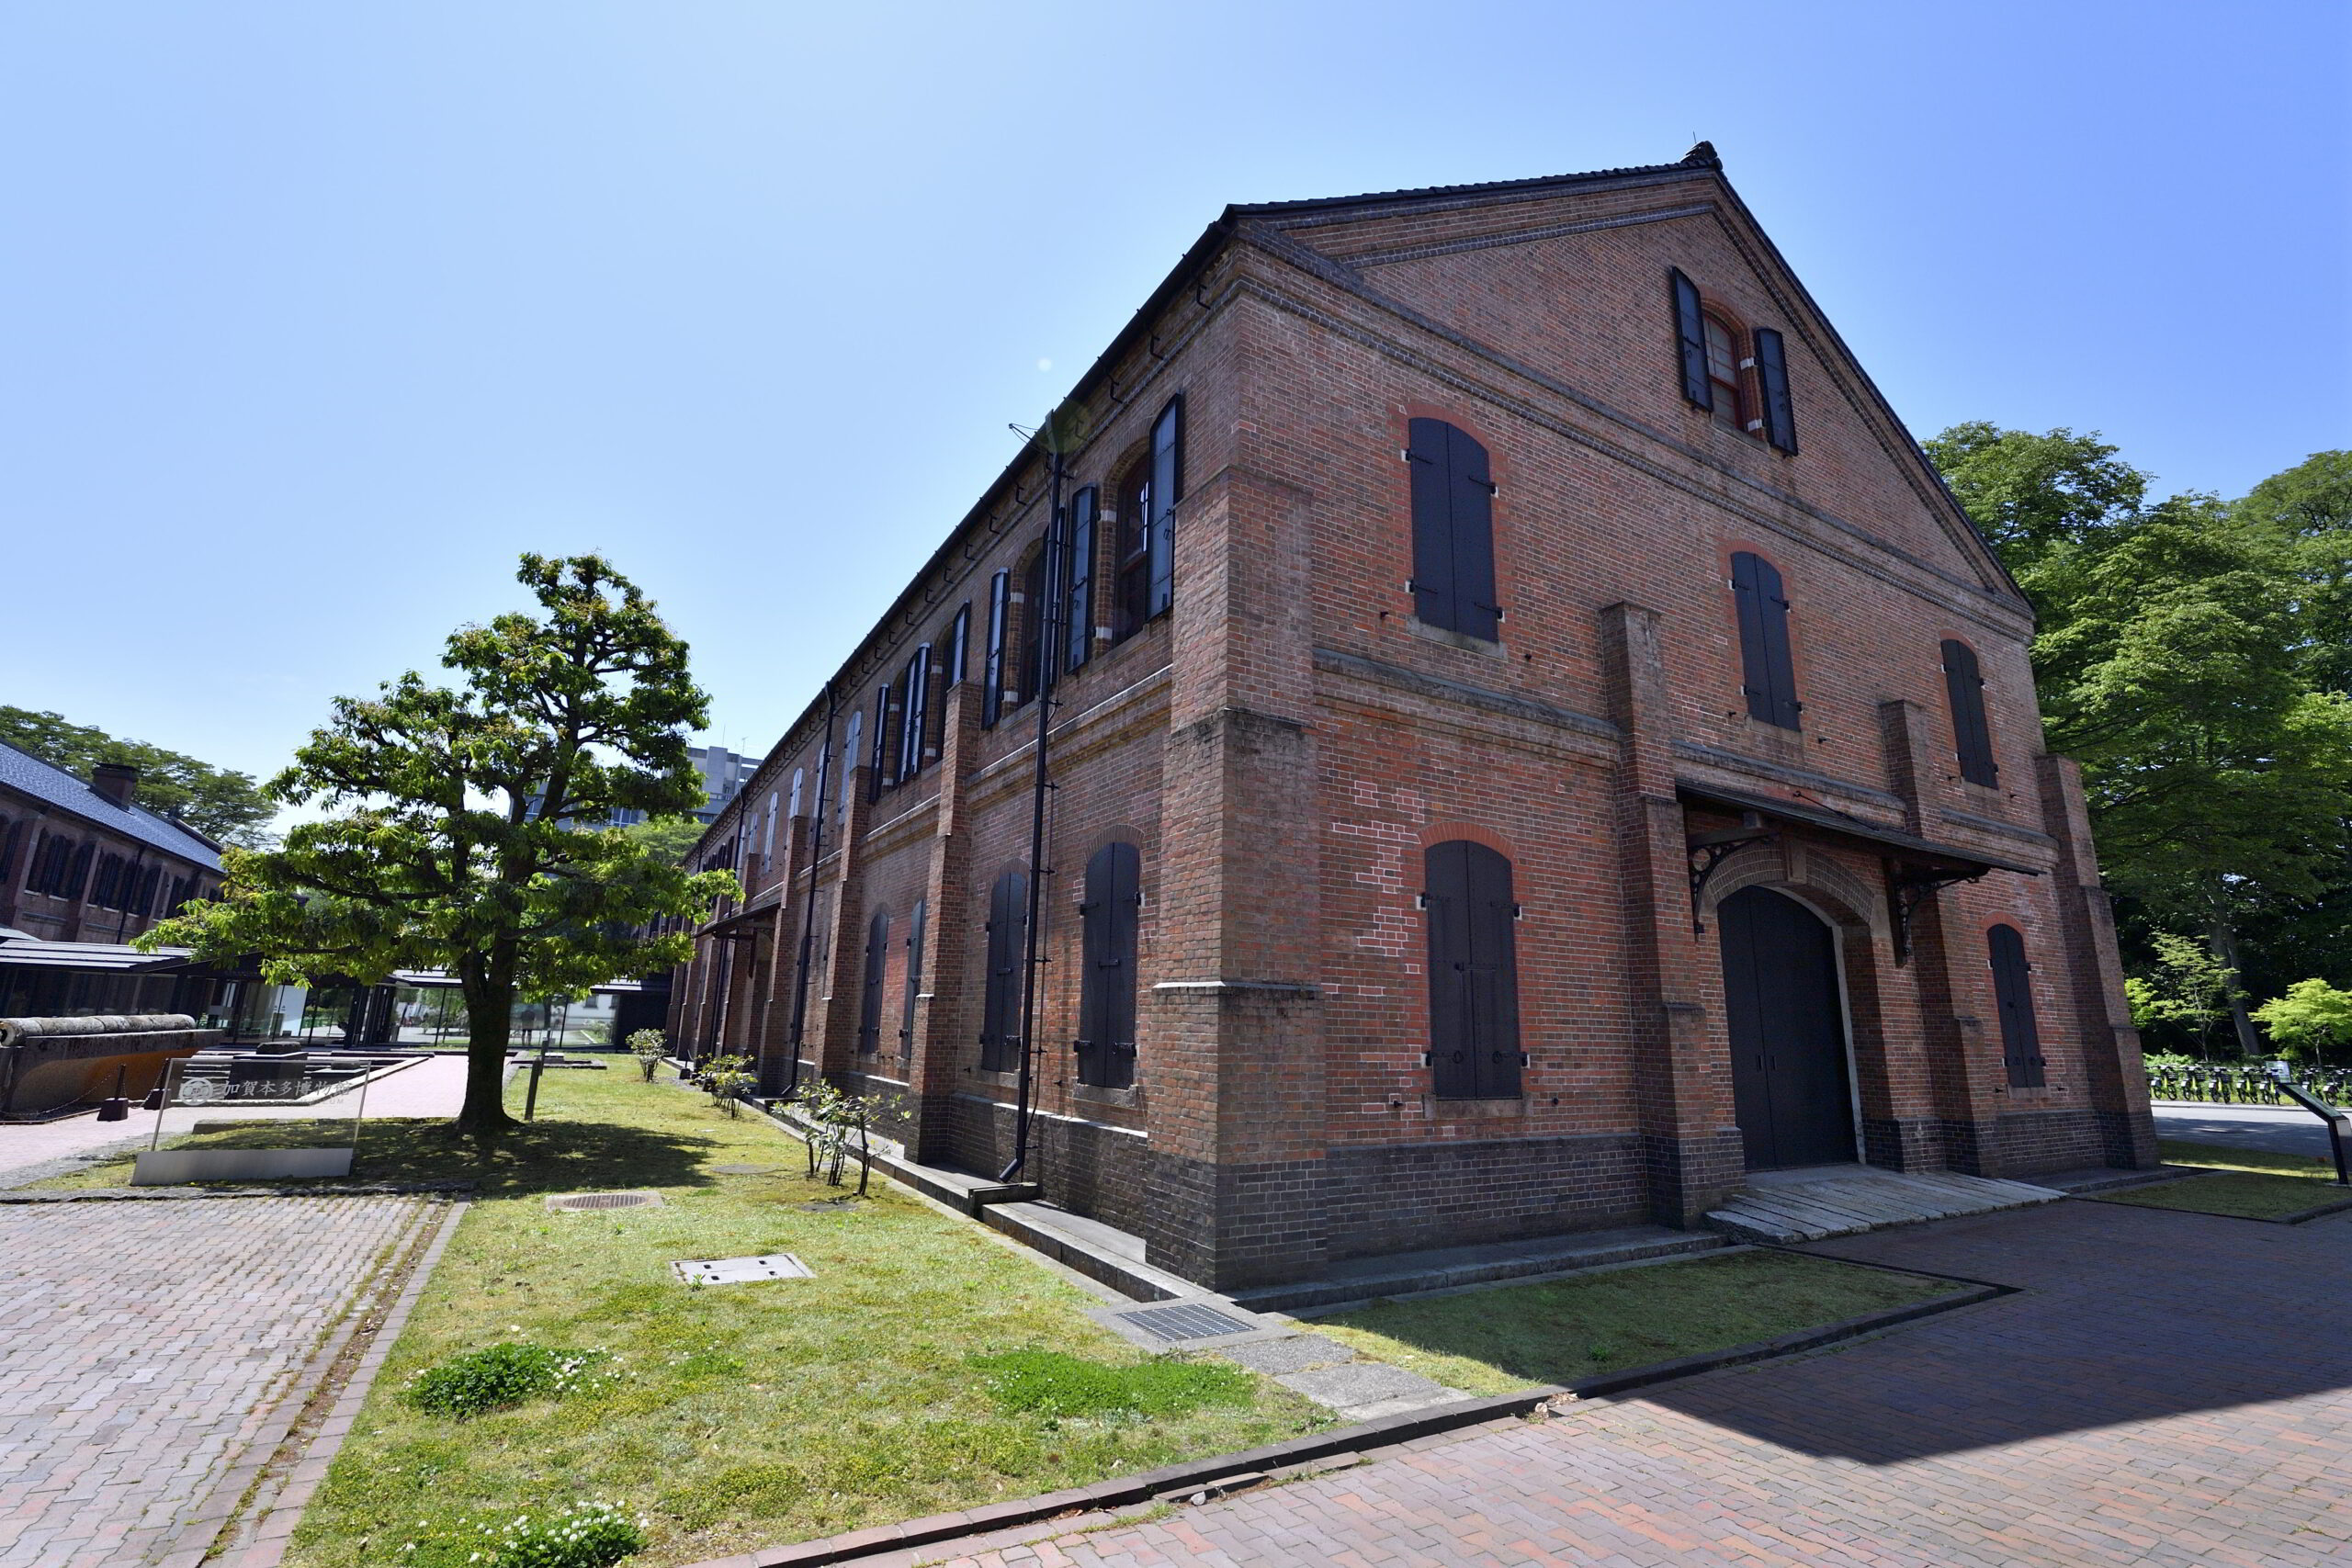 Bmw日本一周26日目 石川県金沢市の 石川県立歴史博物館 に行って来ました 島根のお ちゃんブログ